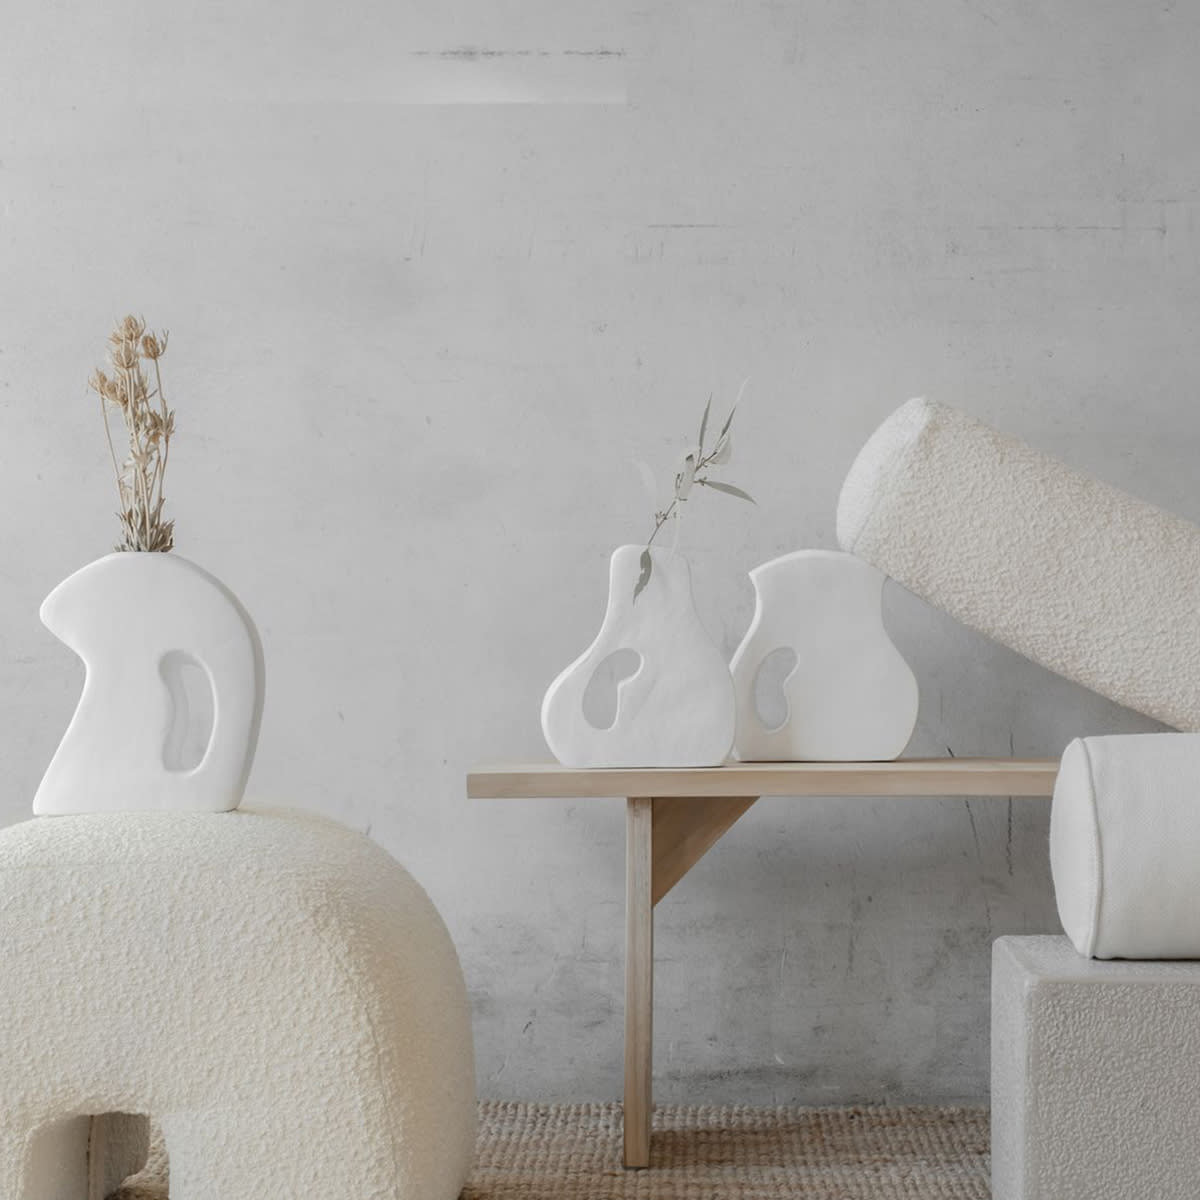 Thomas Vase - White - Styled Image by McMullin & Co